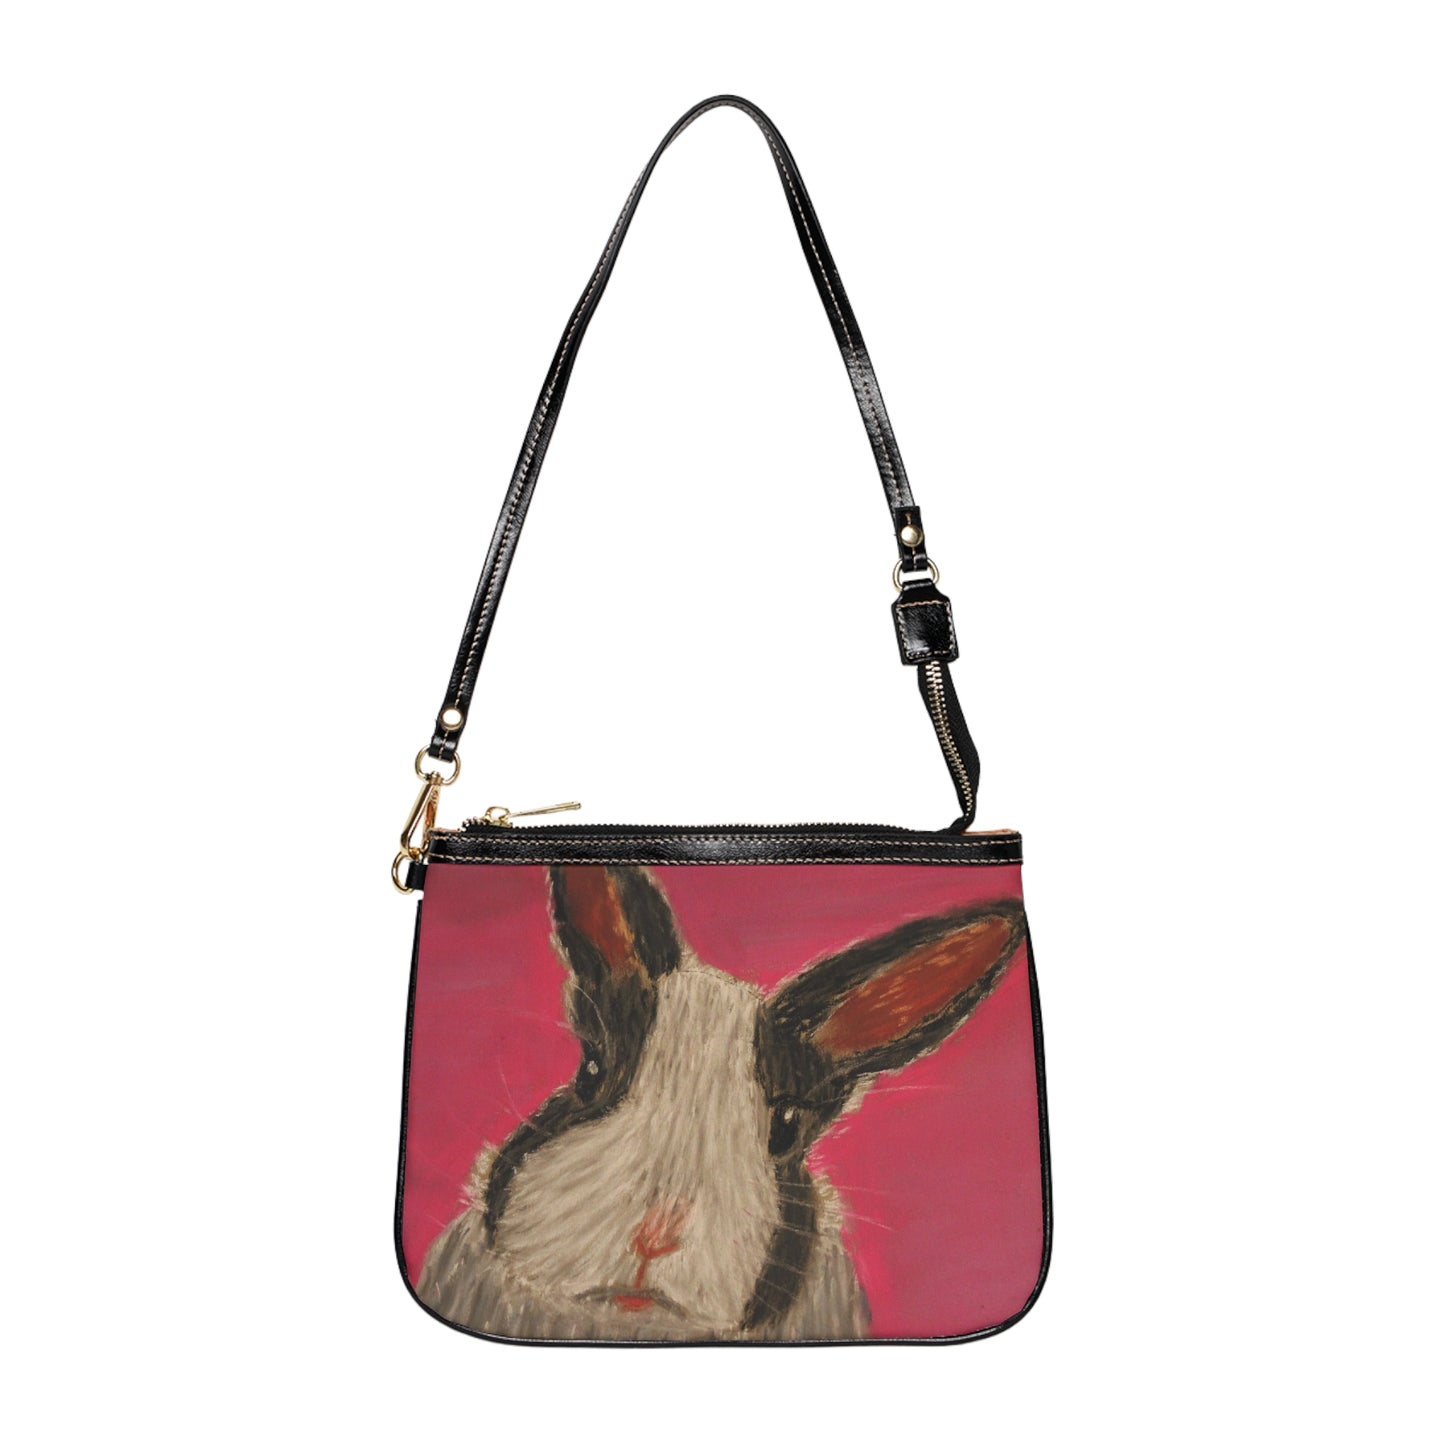 Dutch bunny pastel art small shoulder bag